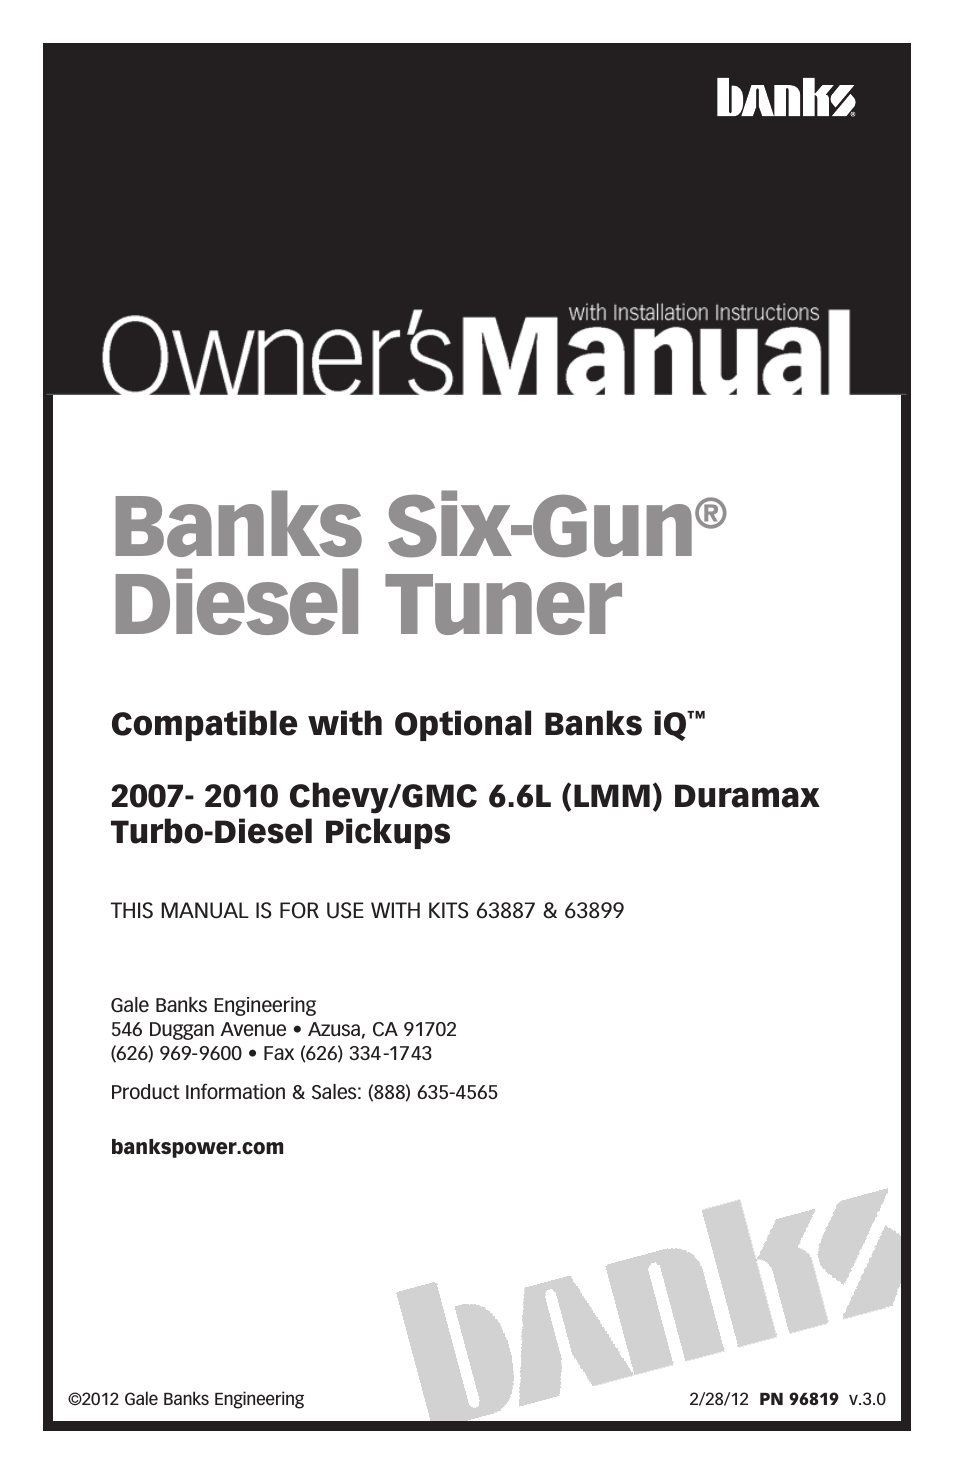 Chevy_GMC Trucks: Duramax LMM (Diesel ’07 - 10 6.6L) Tuner- Six-Gun Diesel Tuner '07-10 (iQ) Compatible with Optional Banks iQ